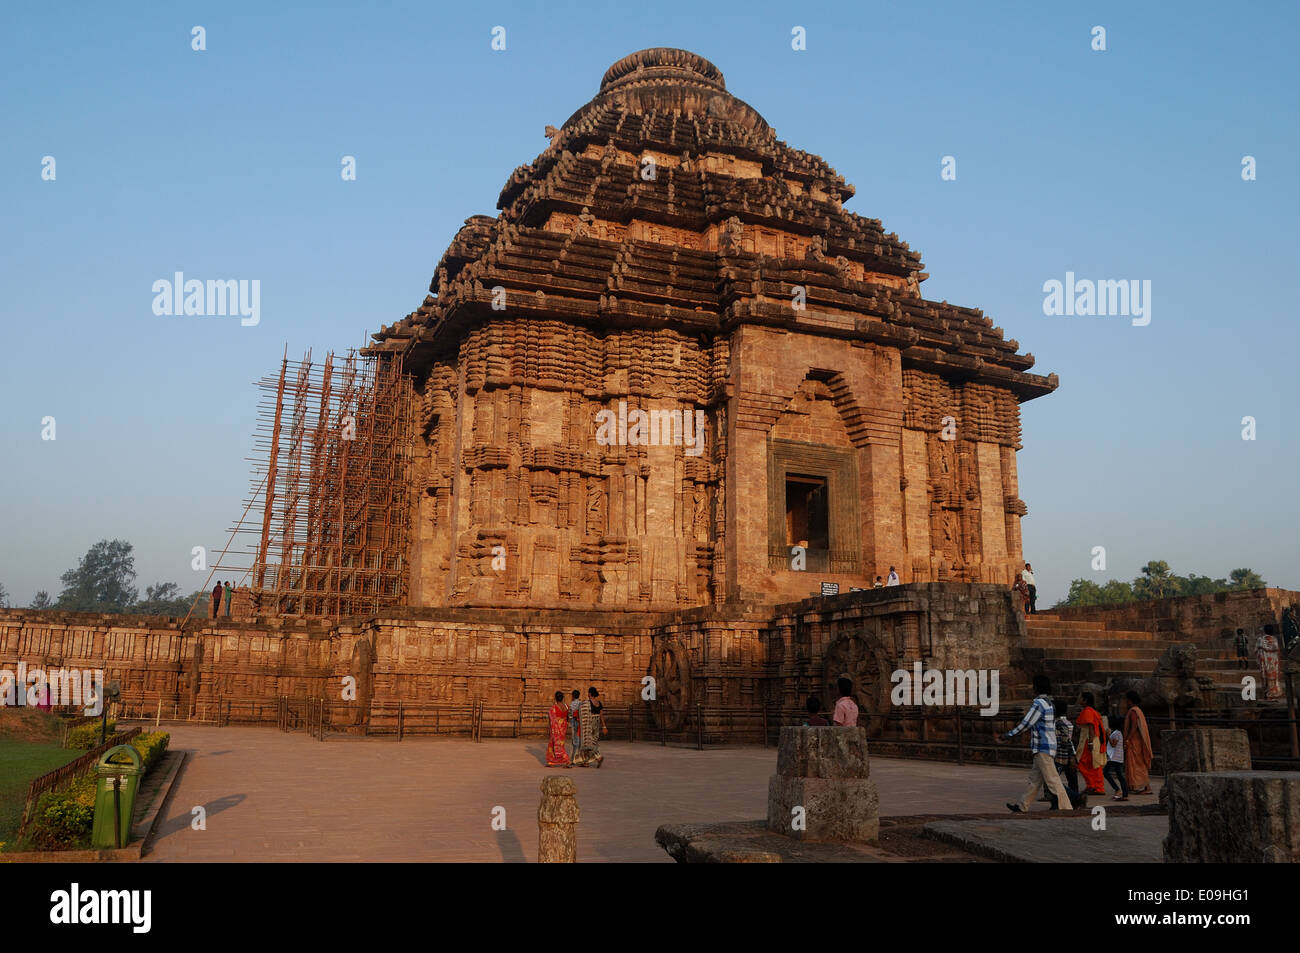 konark sun temple,orissa,india.This is a unesco world heritage site. Stock Photo